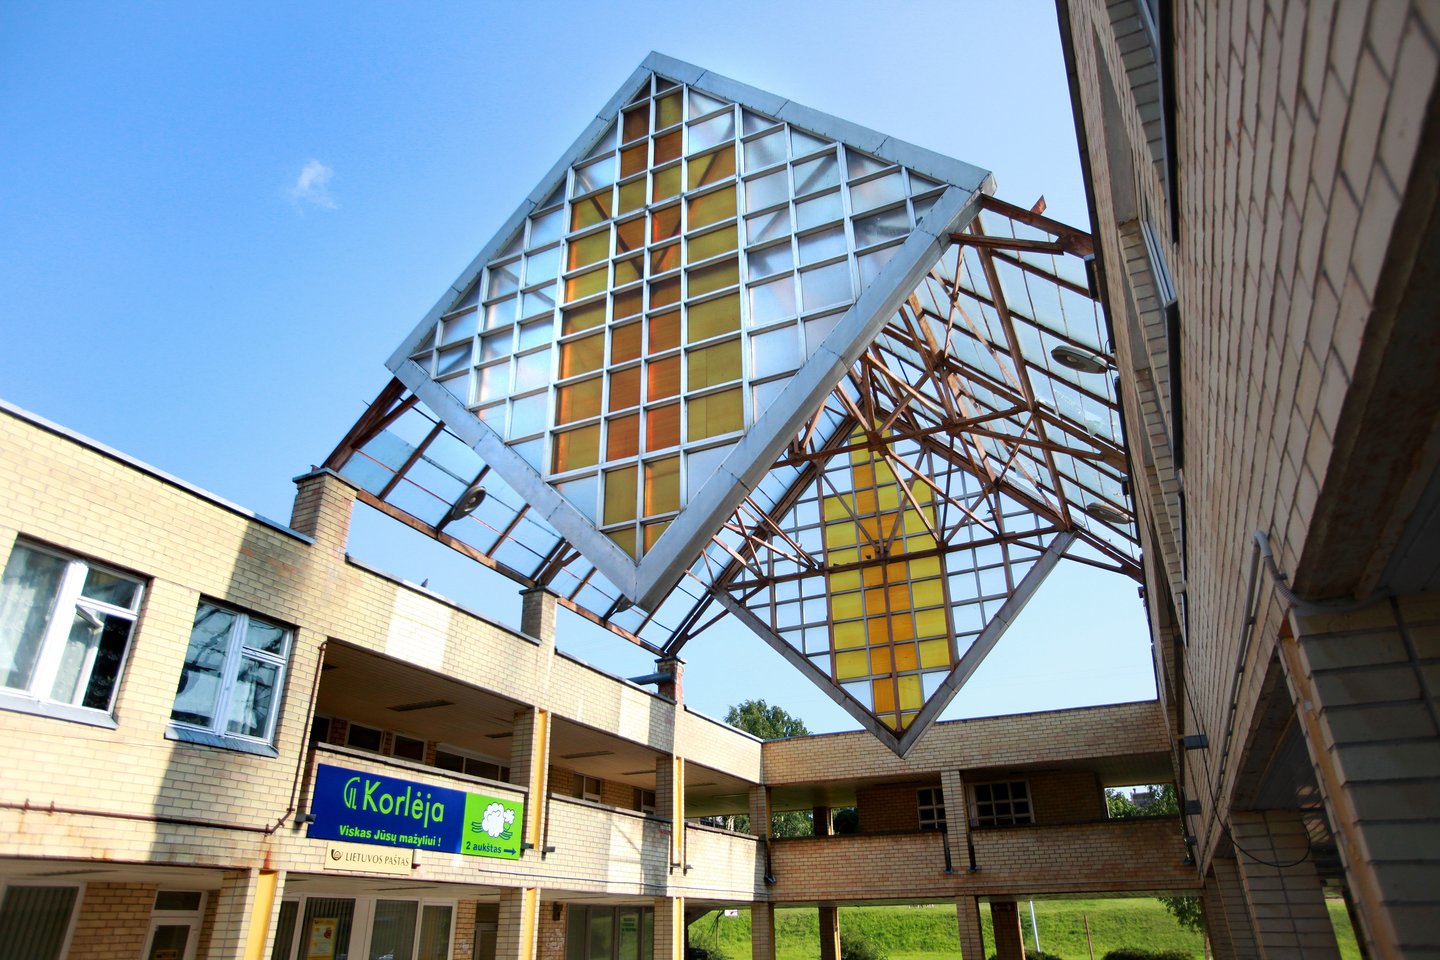 Naujoji Vilnia, buvęs buitinio aptarnavimo pastatas, dabar - policijos komisariatas (arch. Elena Nijolė Bučiūtė), Vilnius.<br>V.Balkūno nuotr.